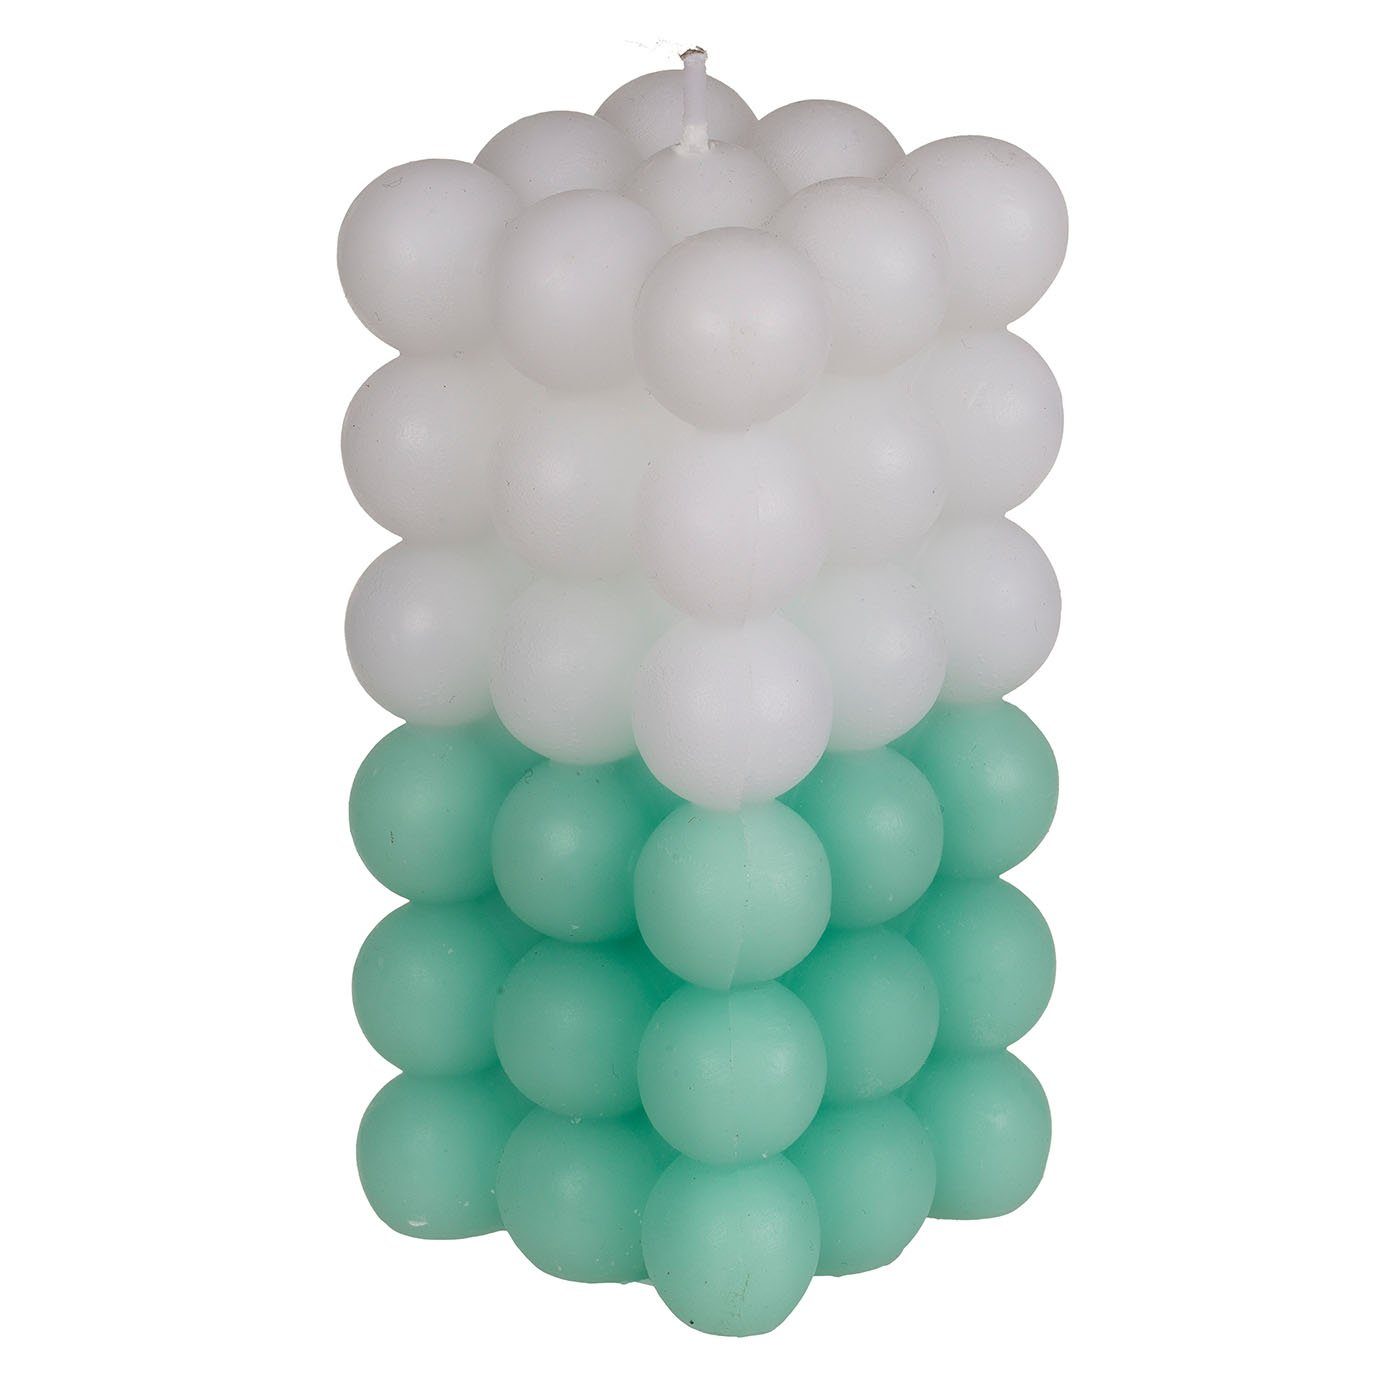 ReWu Formkerze Kerze, Colorful Bubble, ca 6x12cm, 3-farbig sortiert Grün/weiß